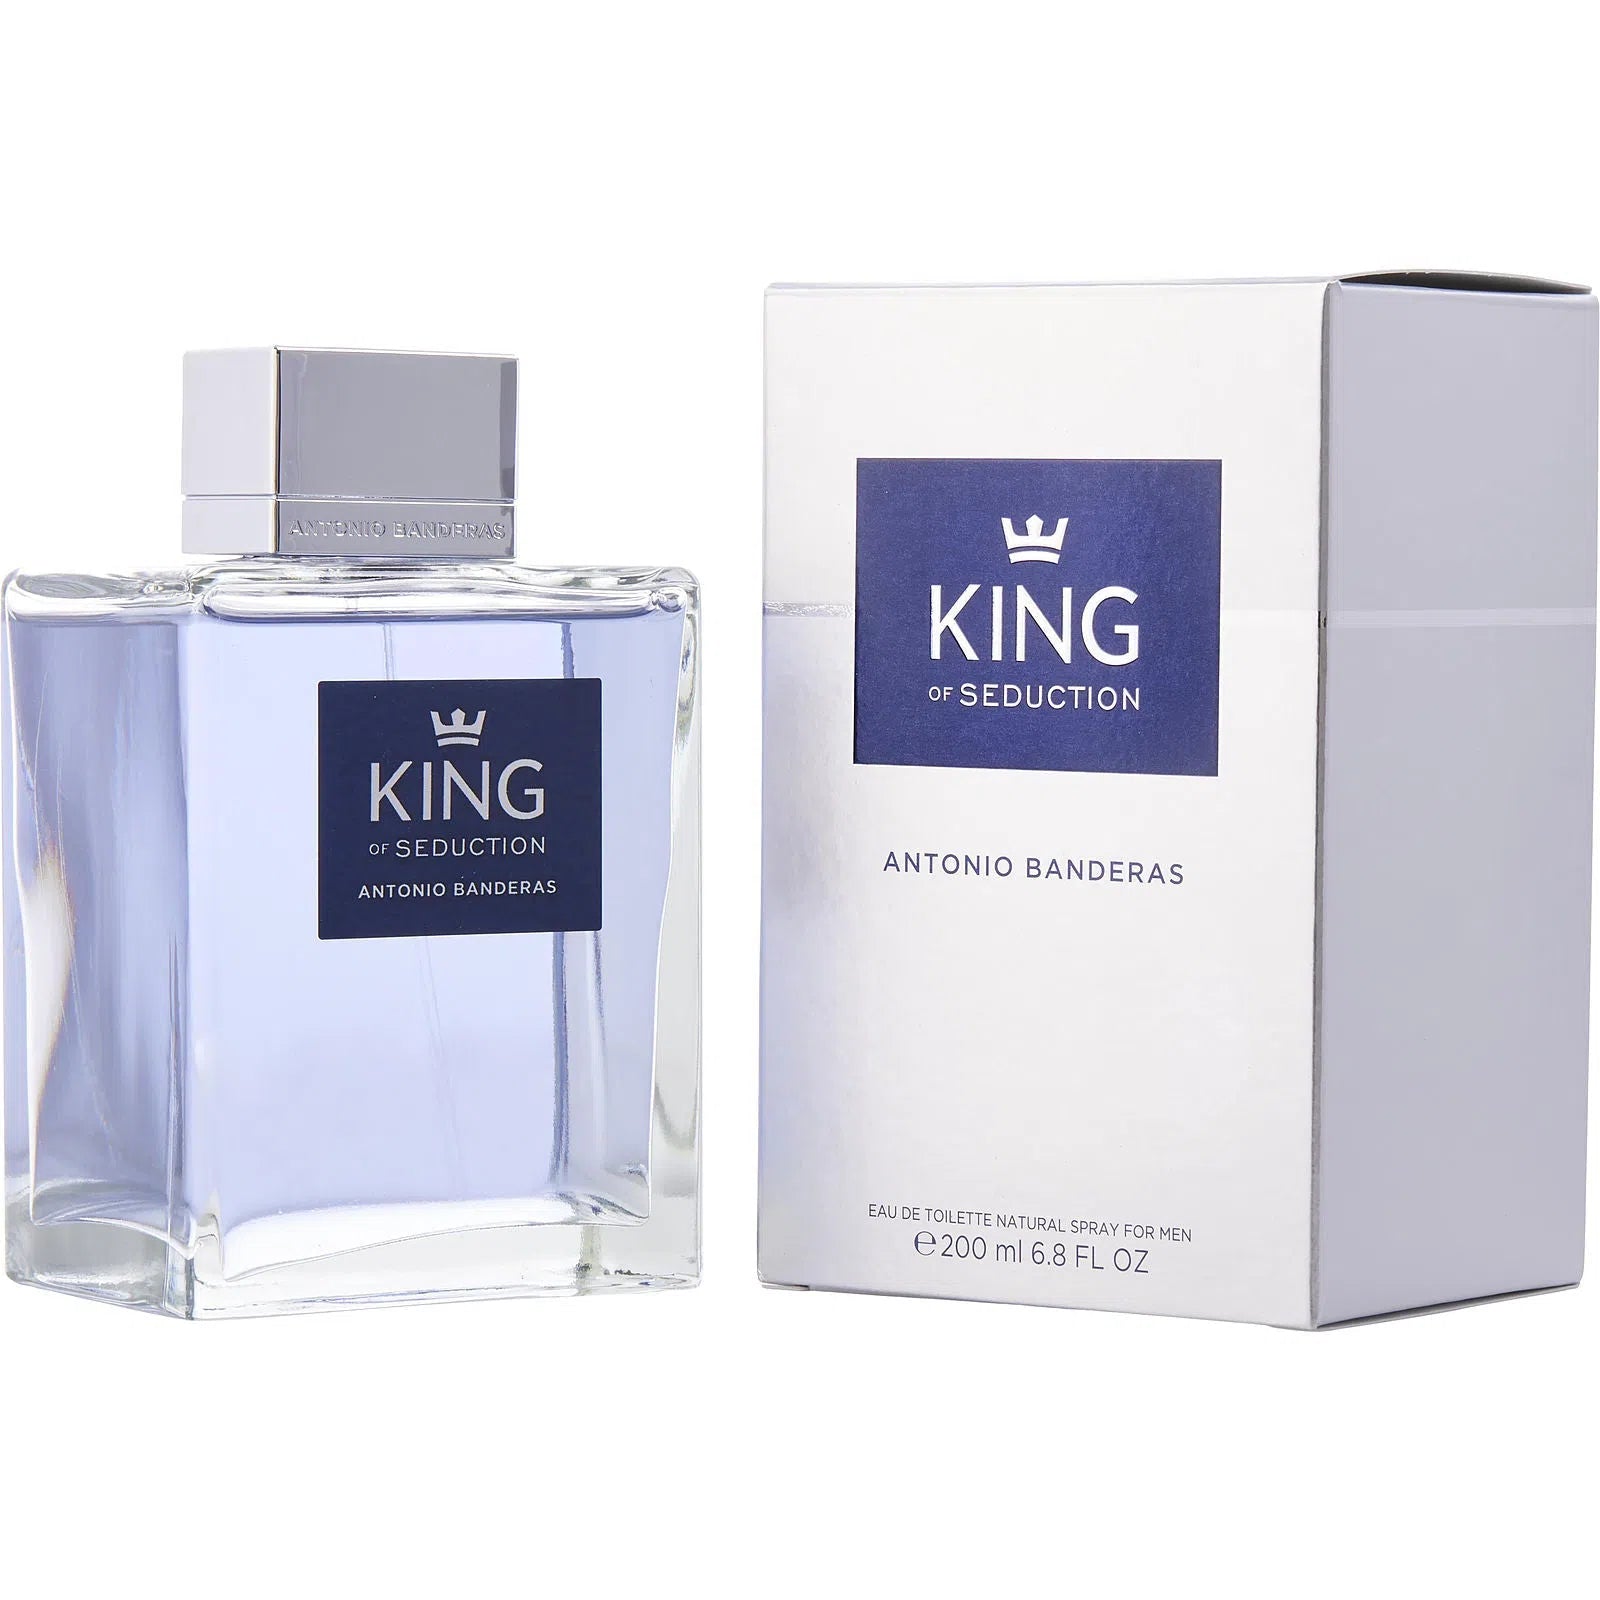 Perfume Antonio Banderas King of Seduction EDT (M) / 200 ml - 8411061819685- Prive Perfumes Honduras